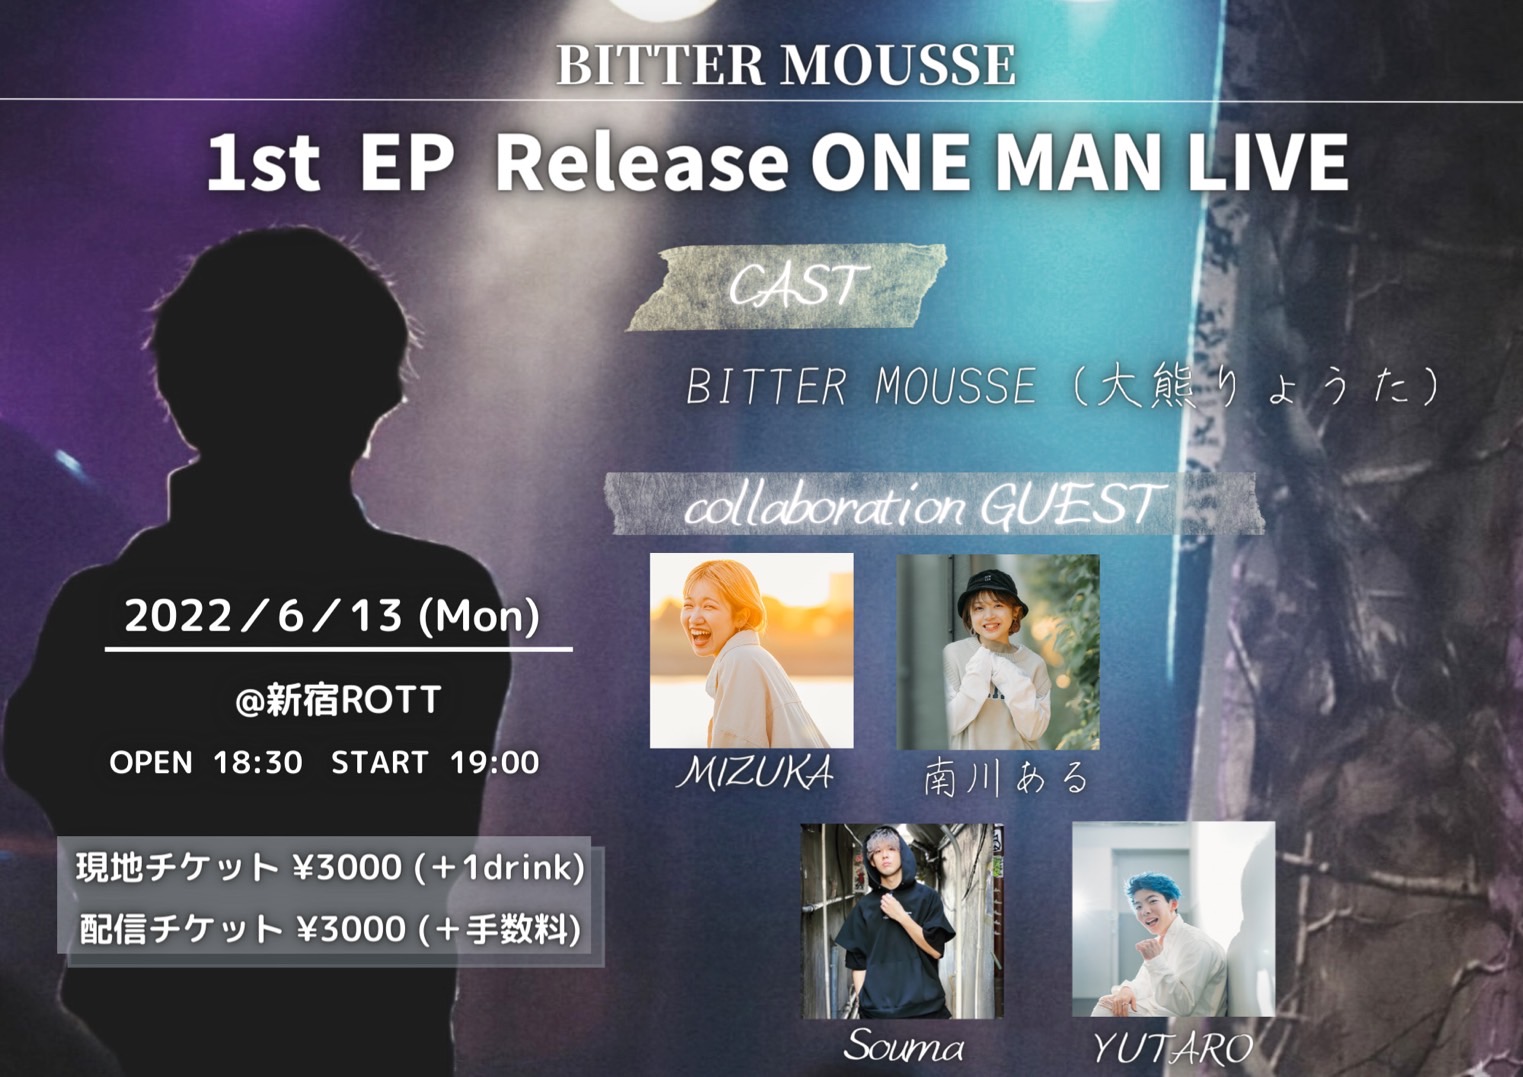 大熊りょうた 新規プロジェクト 1st EP Release ONE MAN LIVE